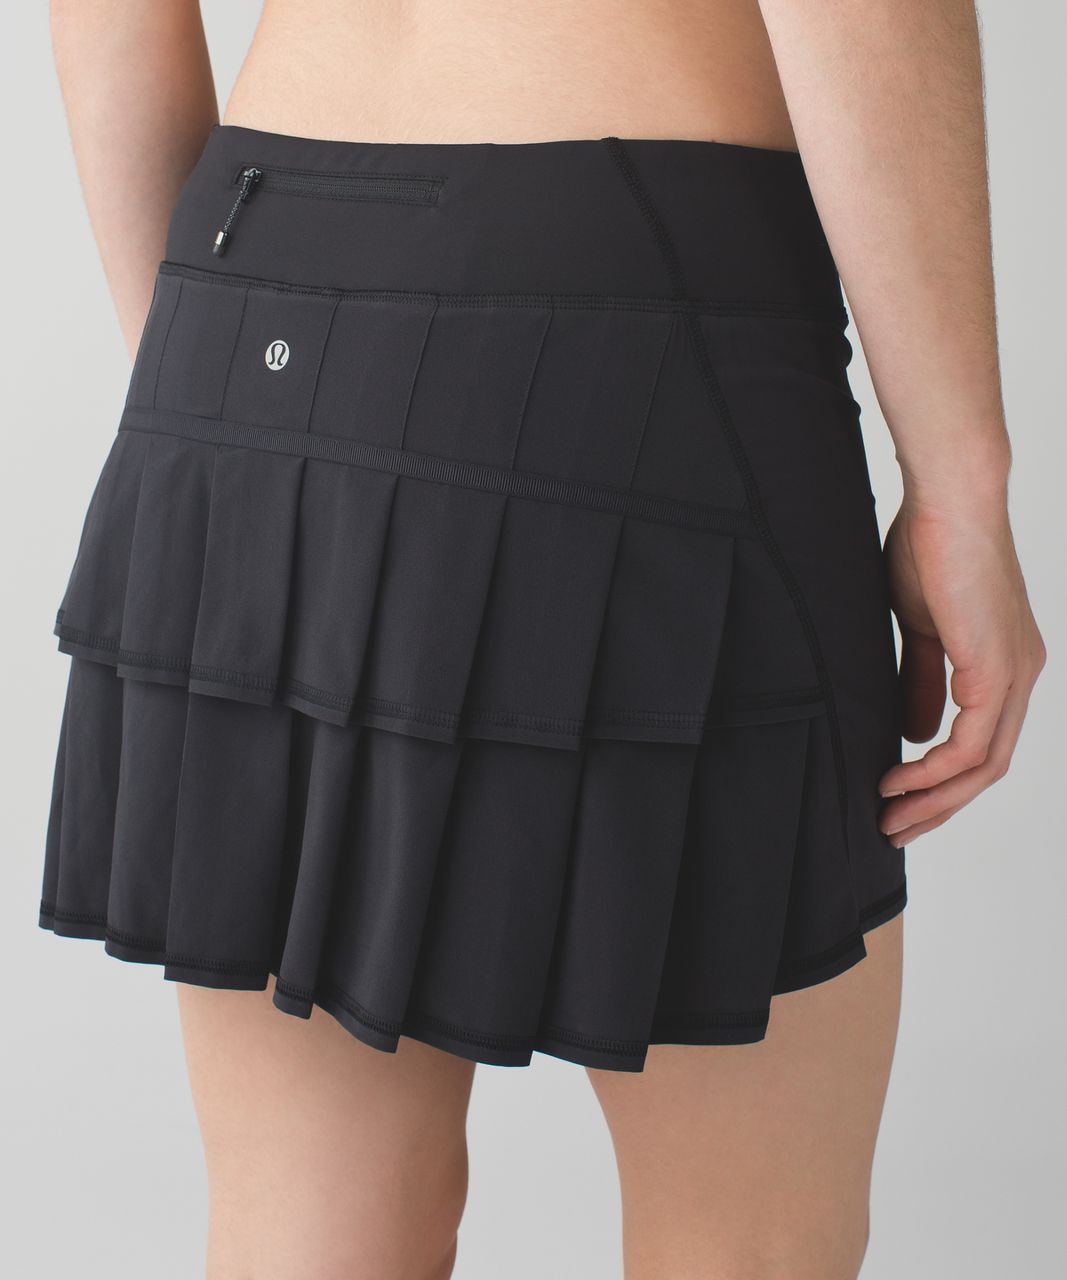 lululemon tennis skirt tall